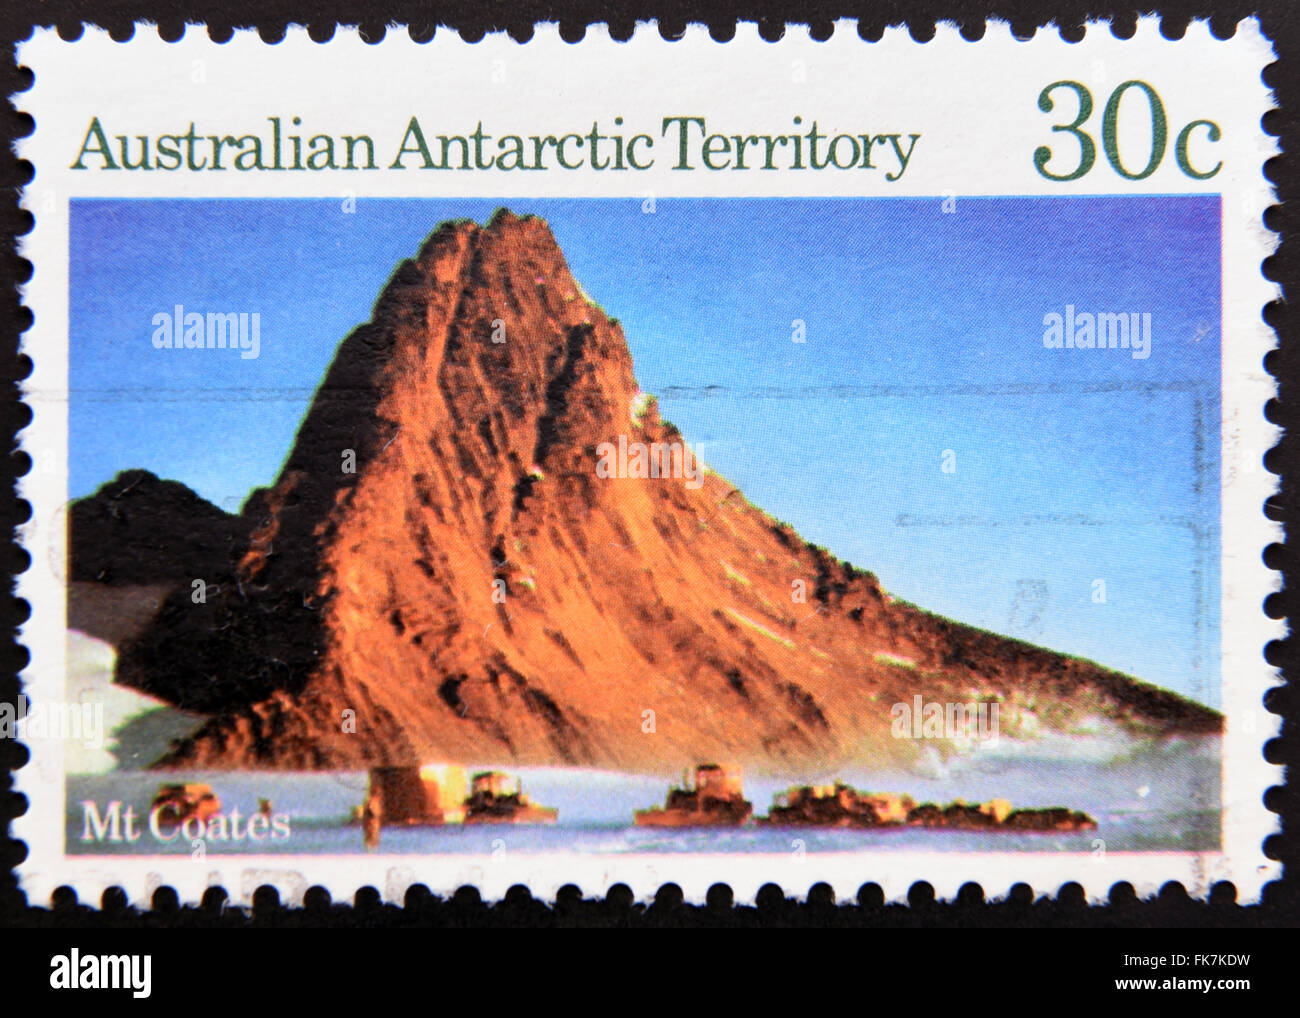 L'AUSTRALIE - circa 1984 : timbre imprimé dans le Territoire antarctique australien chien montre, de l'équipe Mt Coates, vers 1984 Banque D'Images